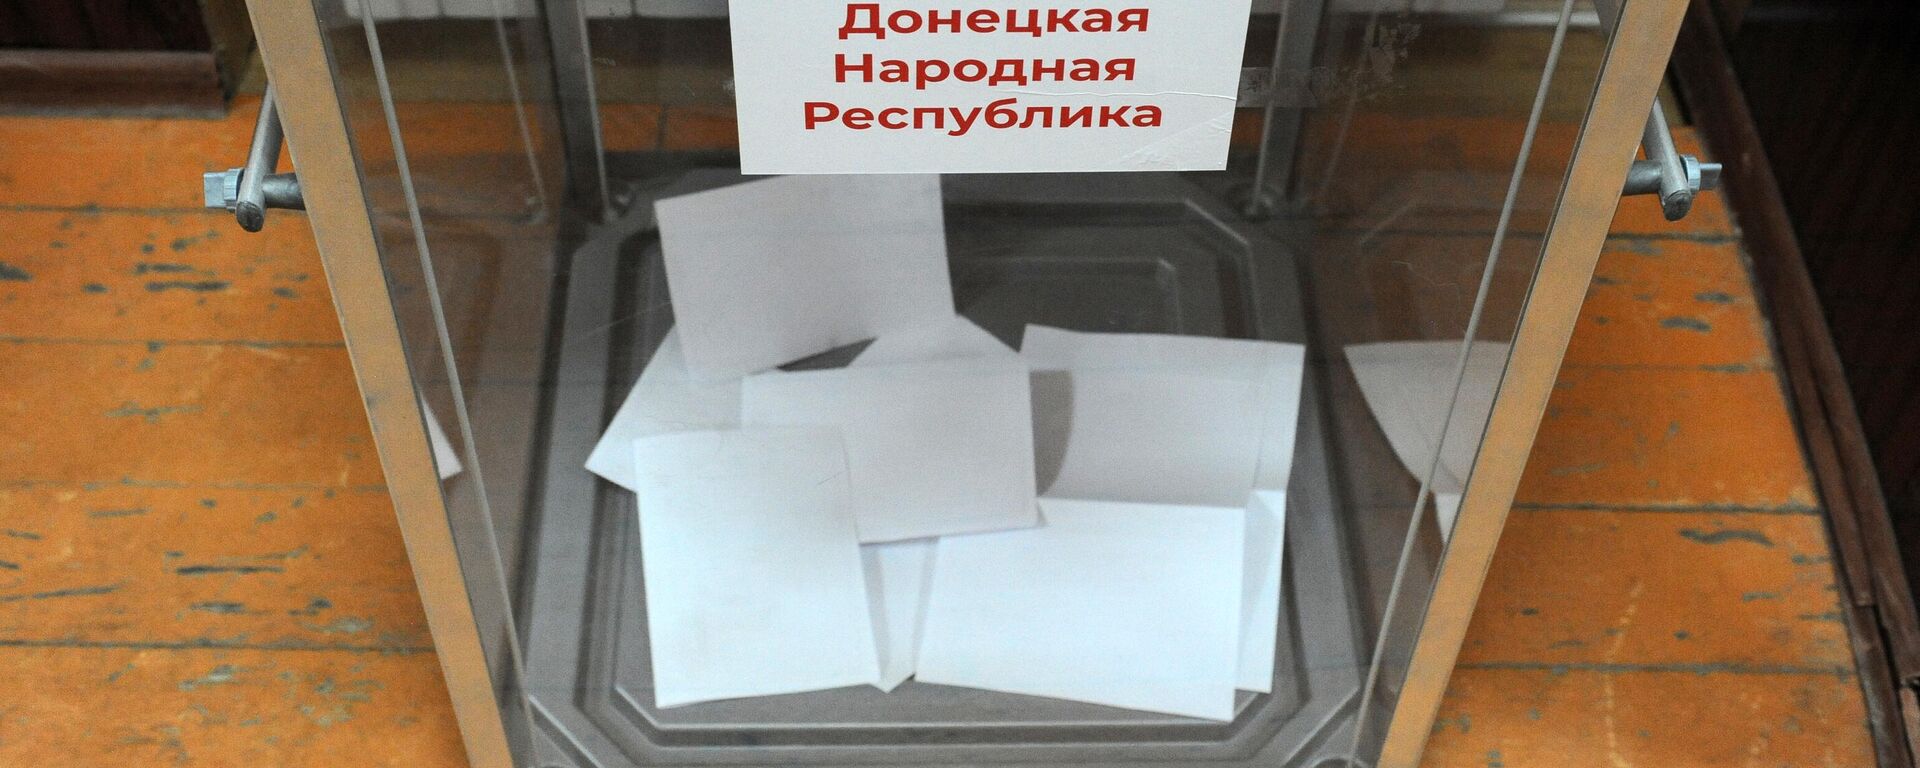 Urna de votación en el referendo unionista en Donetsk - Sputnik Mundo, 1920, 27.09.2022